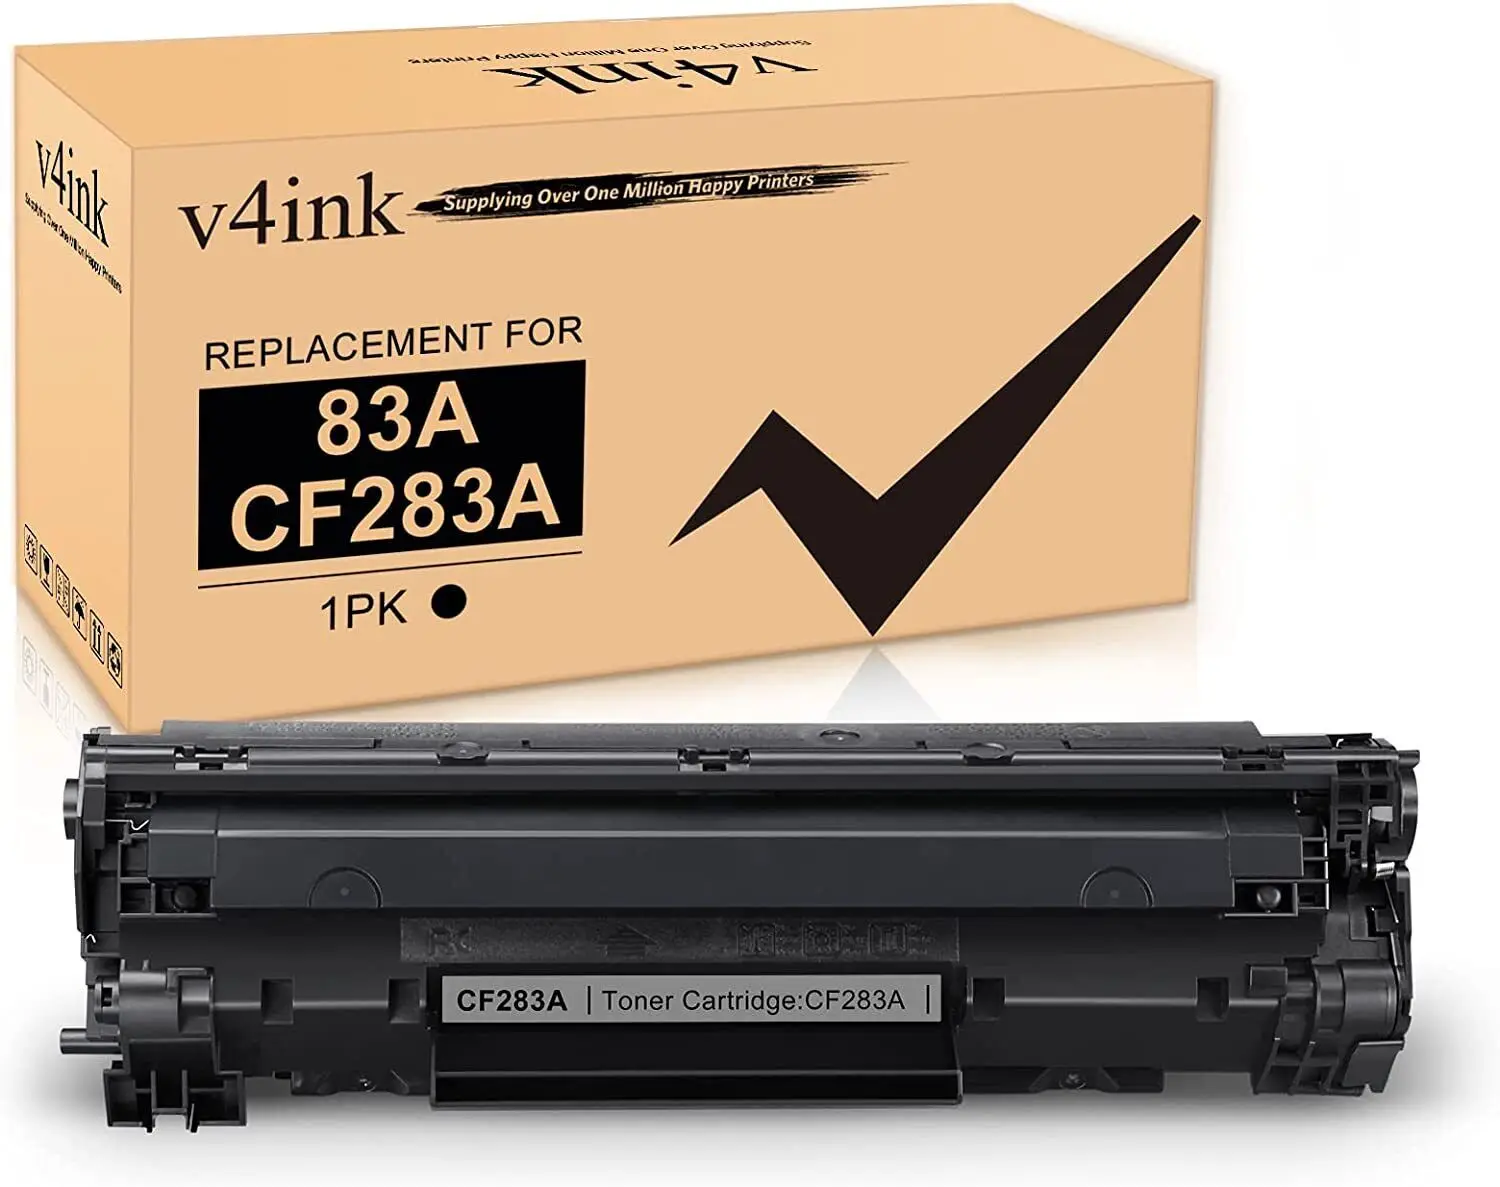 Картридж с тонером V4INK CF283A 83A для HP MFP M127fw M127fn M125nw M201dw, 1 упаковка картридж cf283a 83a для hp laserjet pro m127fn m127fw